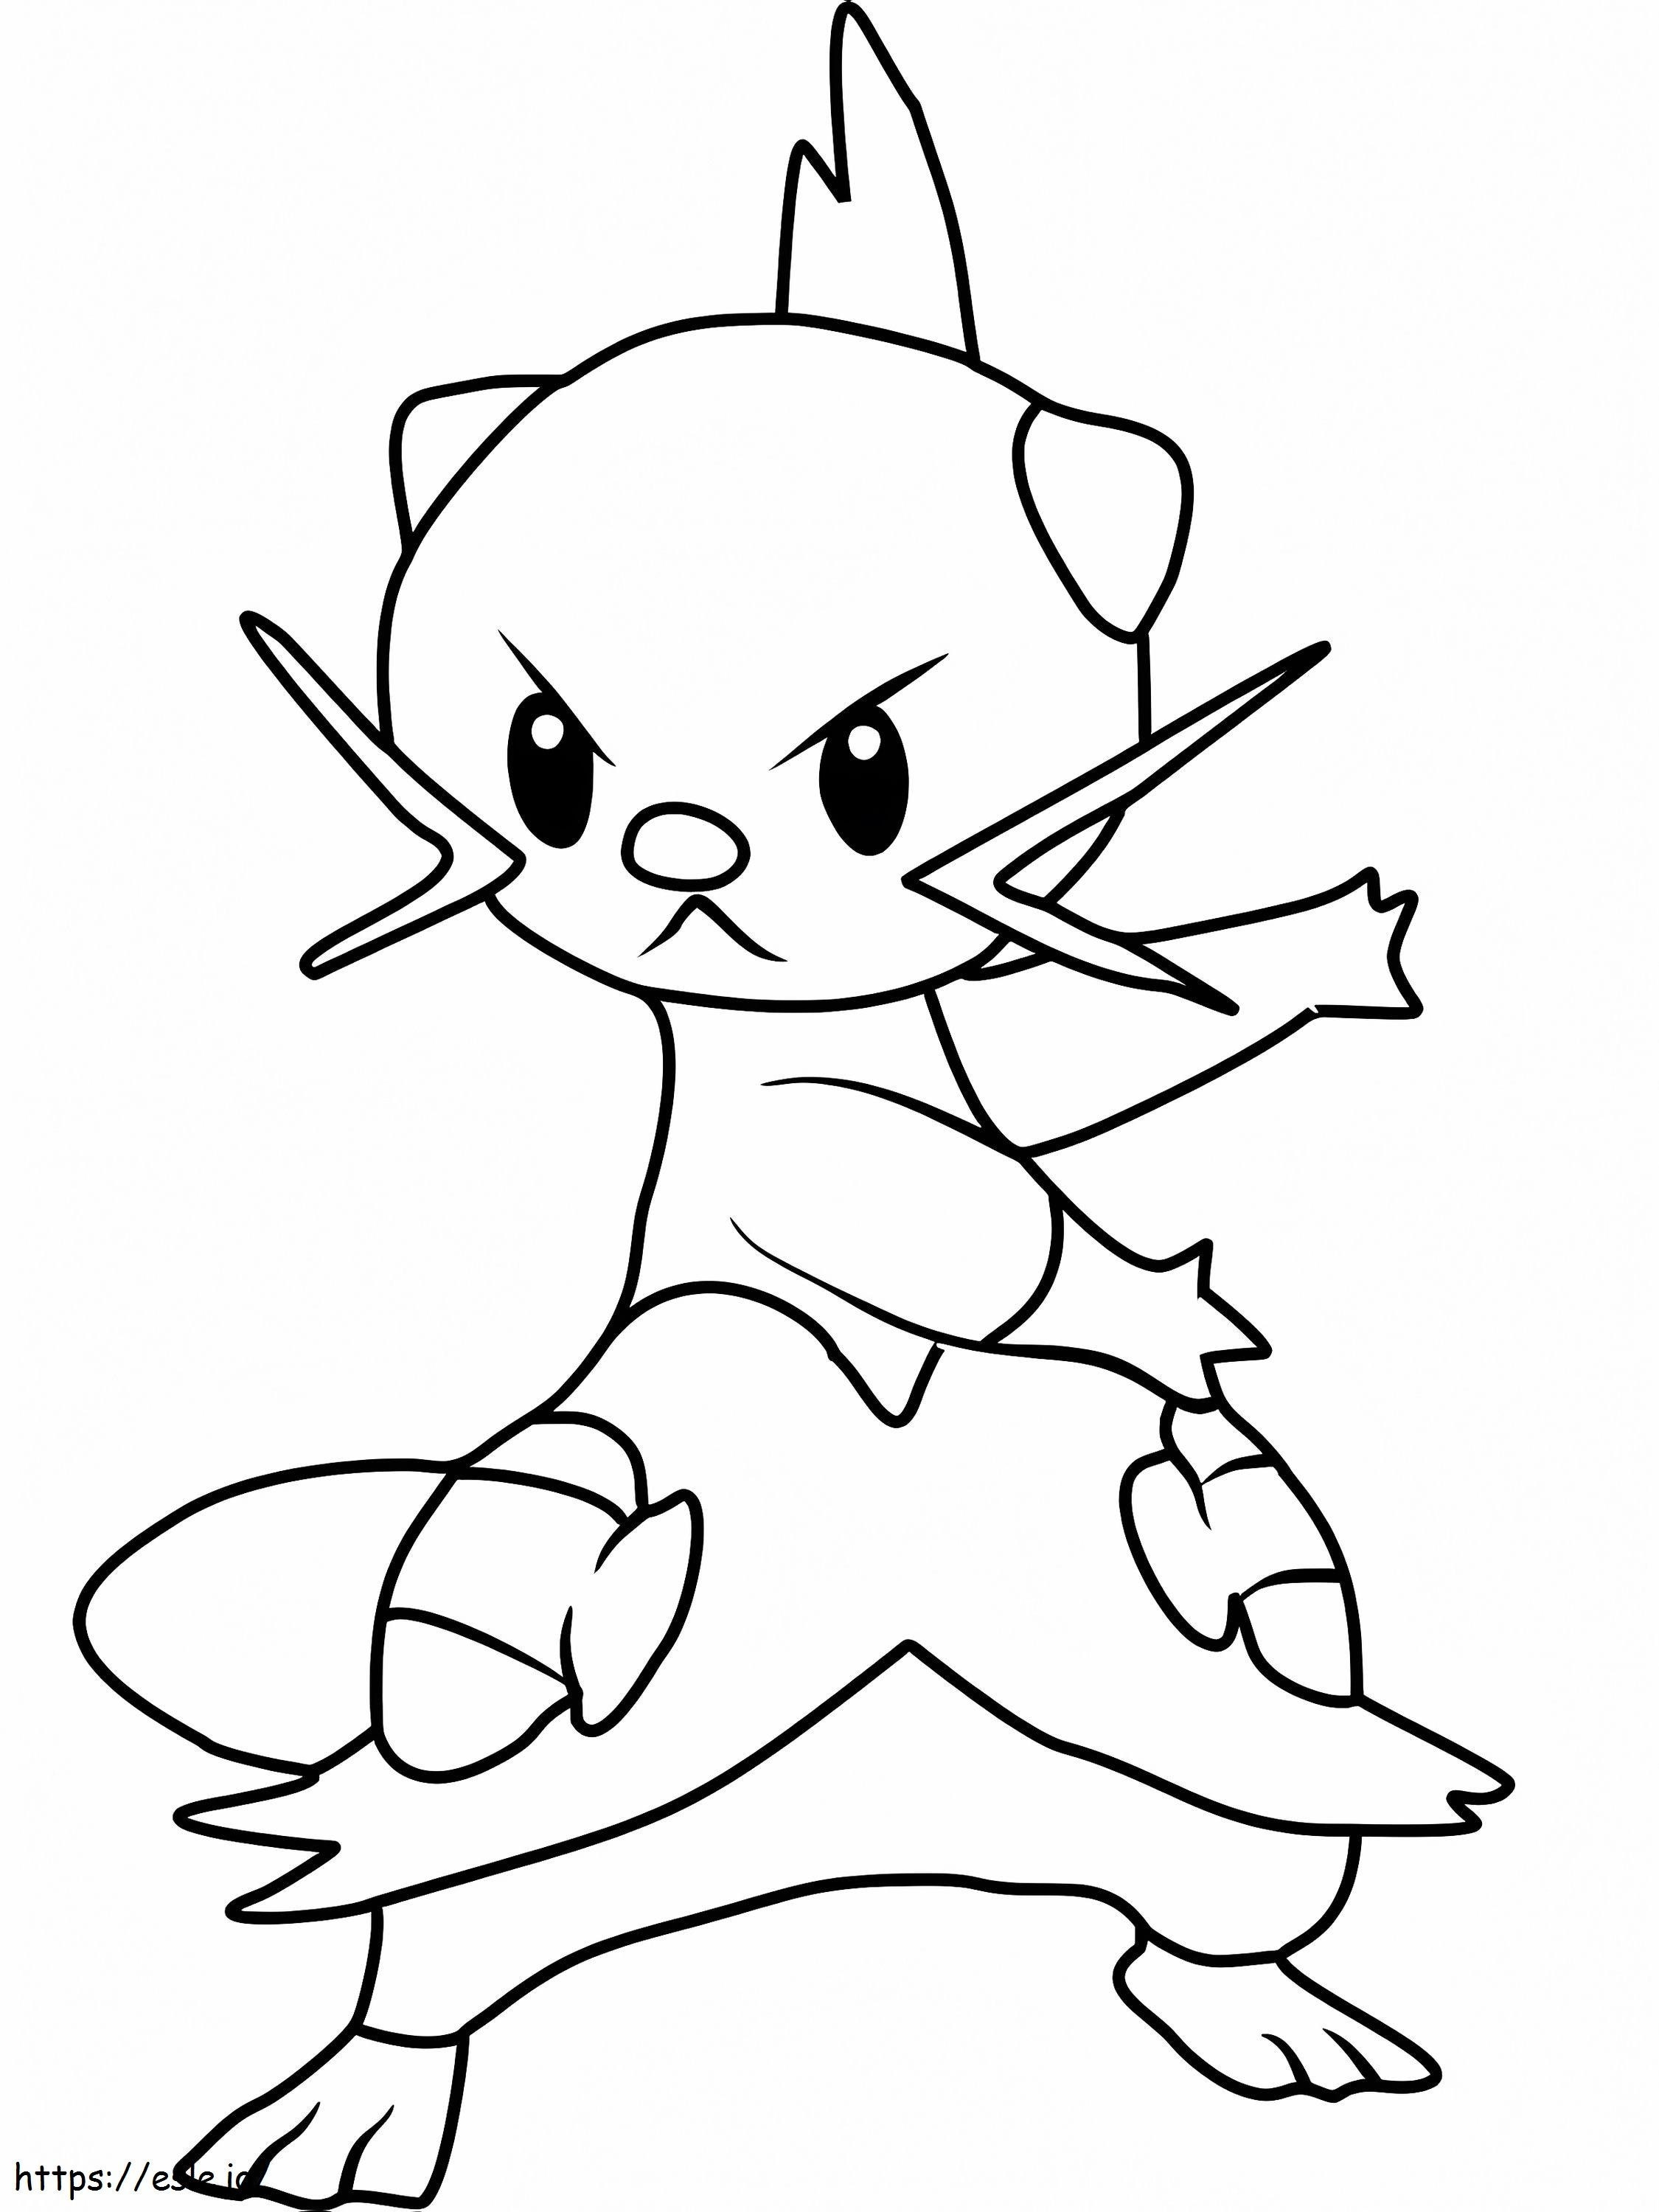 Dewott Gen 5 Pokemon coloring page